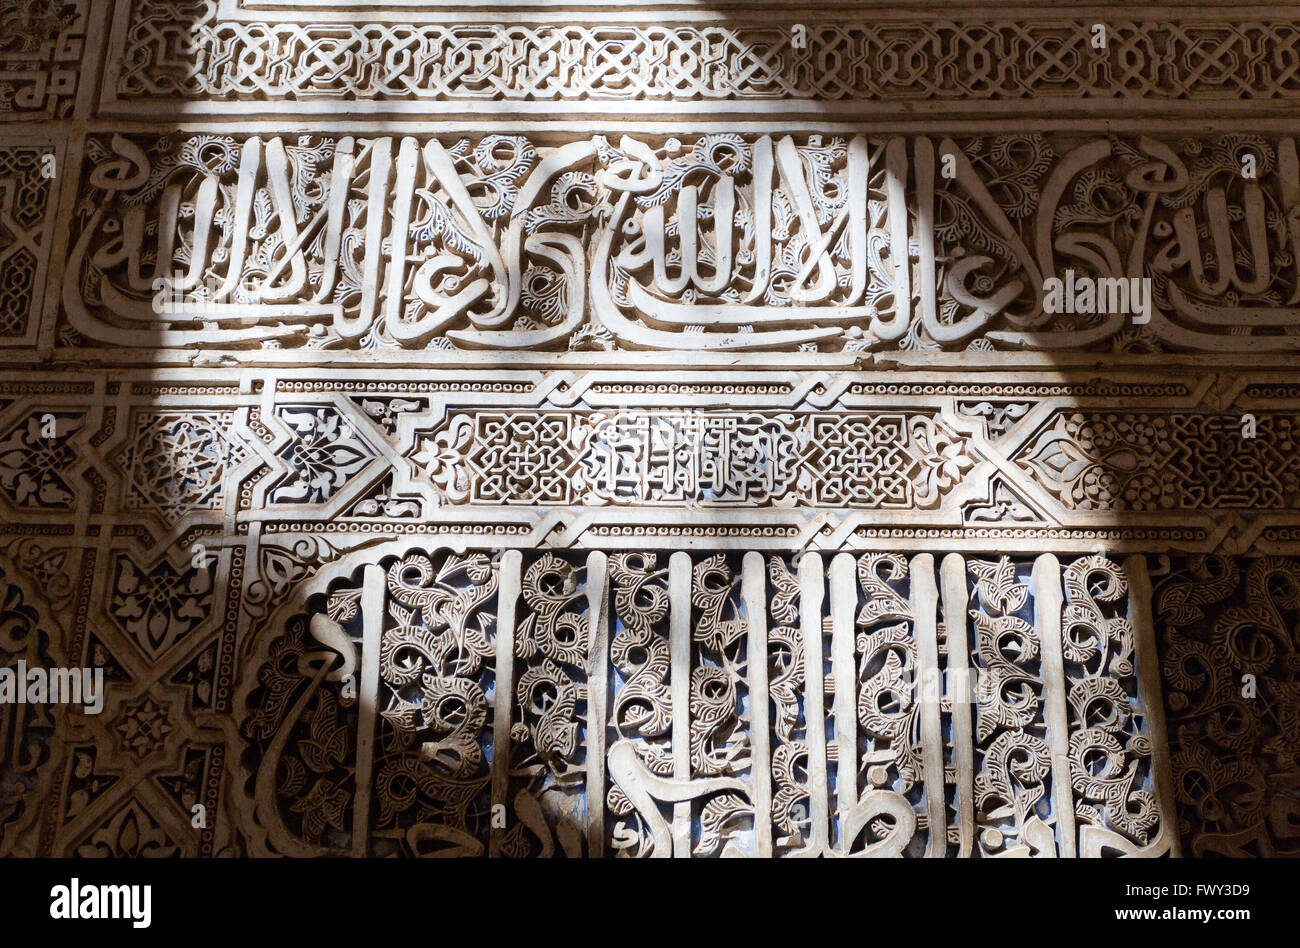 Détail de la magnifique décoration en stuc avec motifs épigraphiques dans l'Alhambra, Grenade, Espagne Banque D'Images